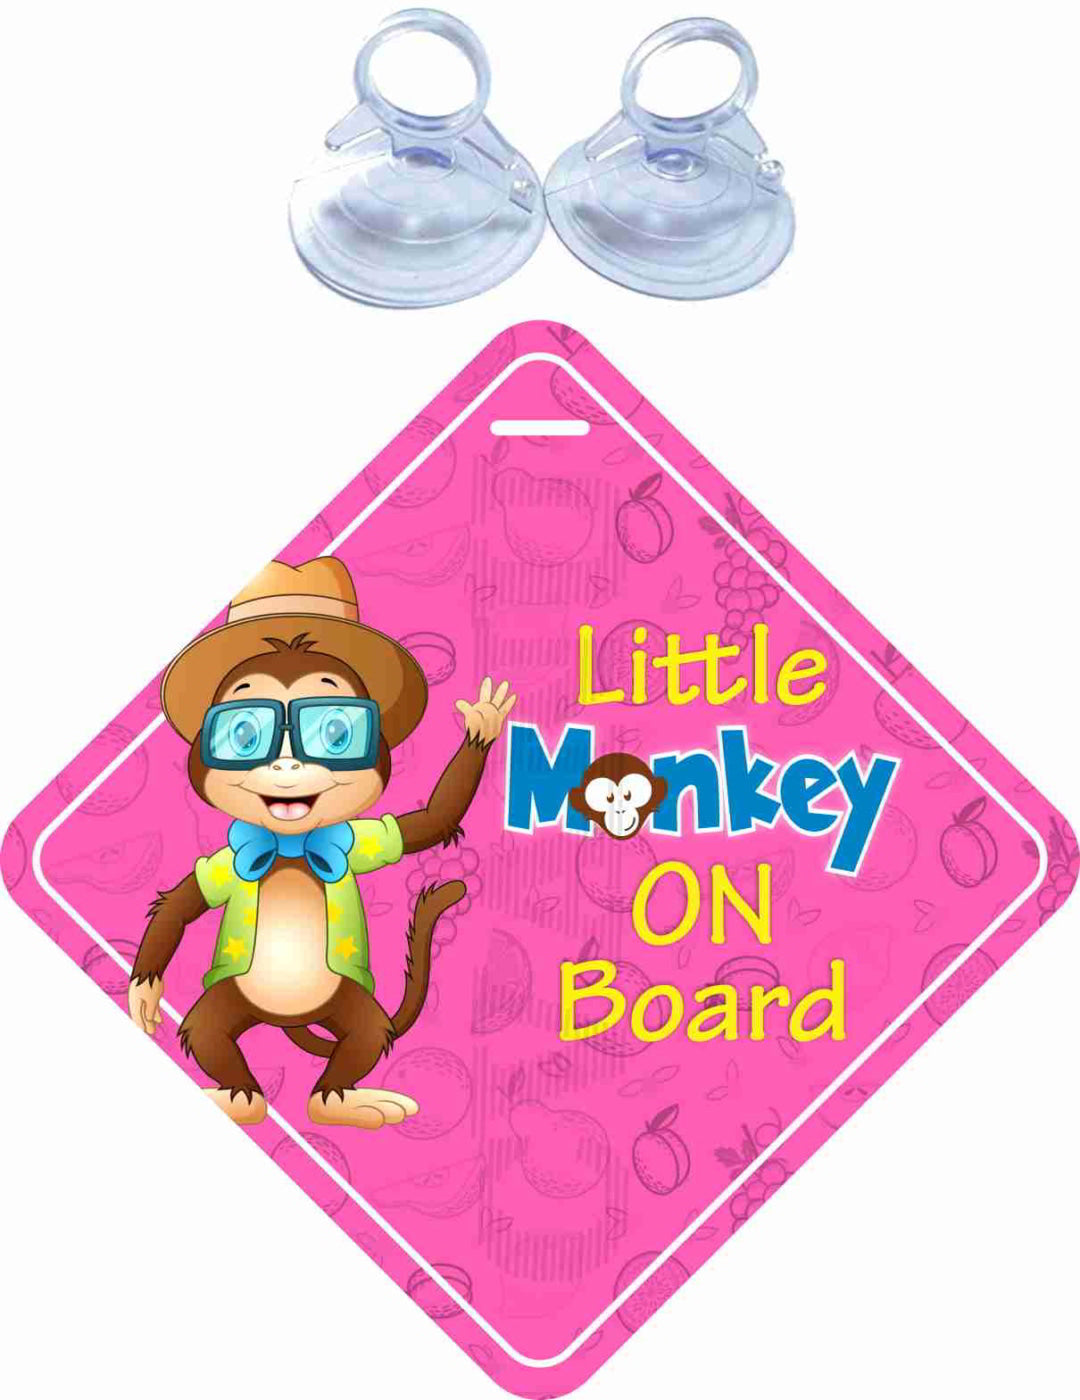 Little Monkey on Board Safety Car Sticker